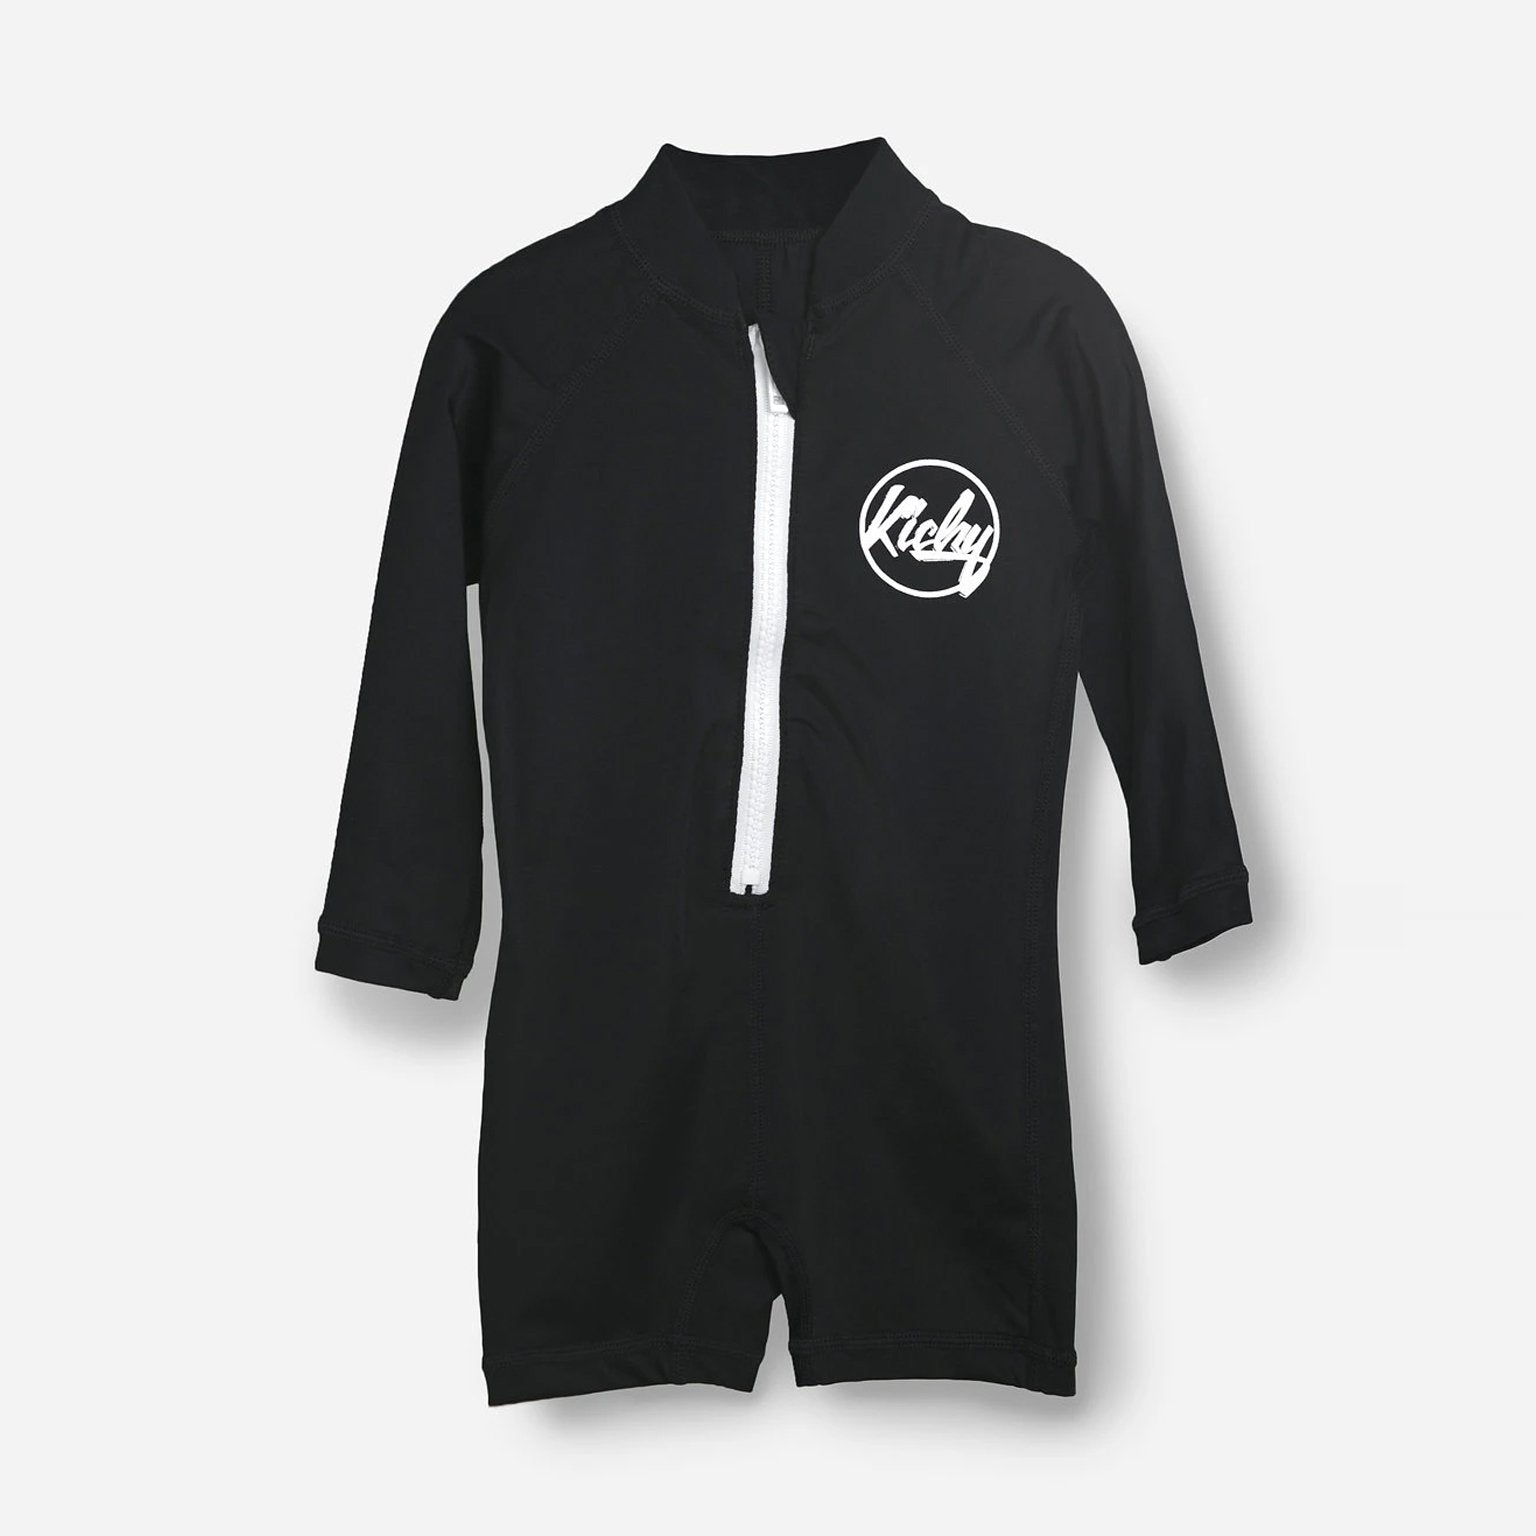 Rashguard Short Swim Suit (Black)